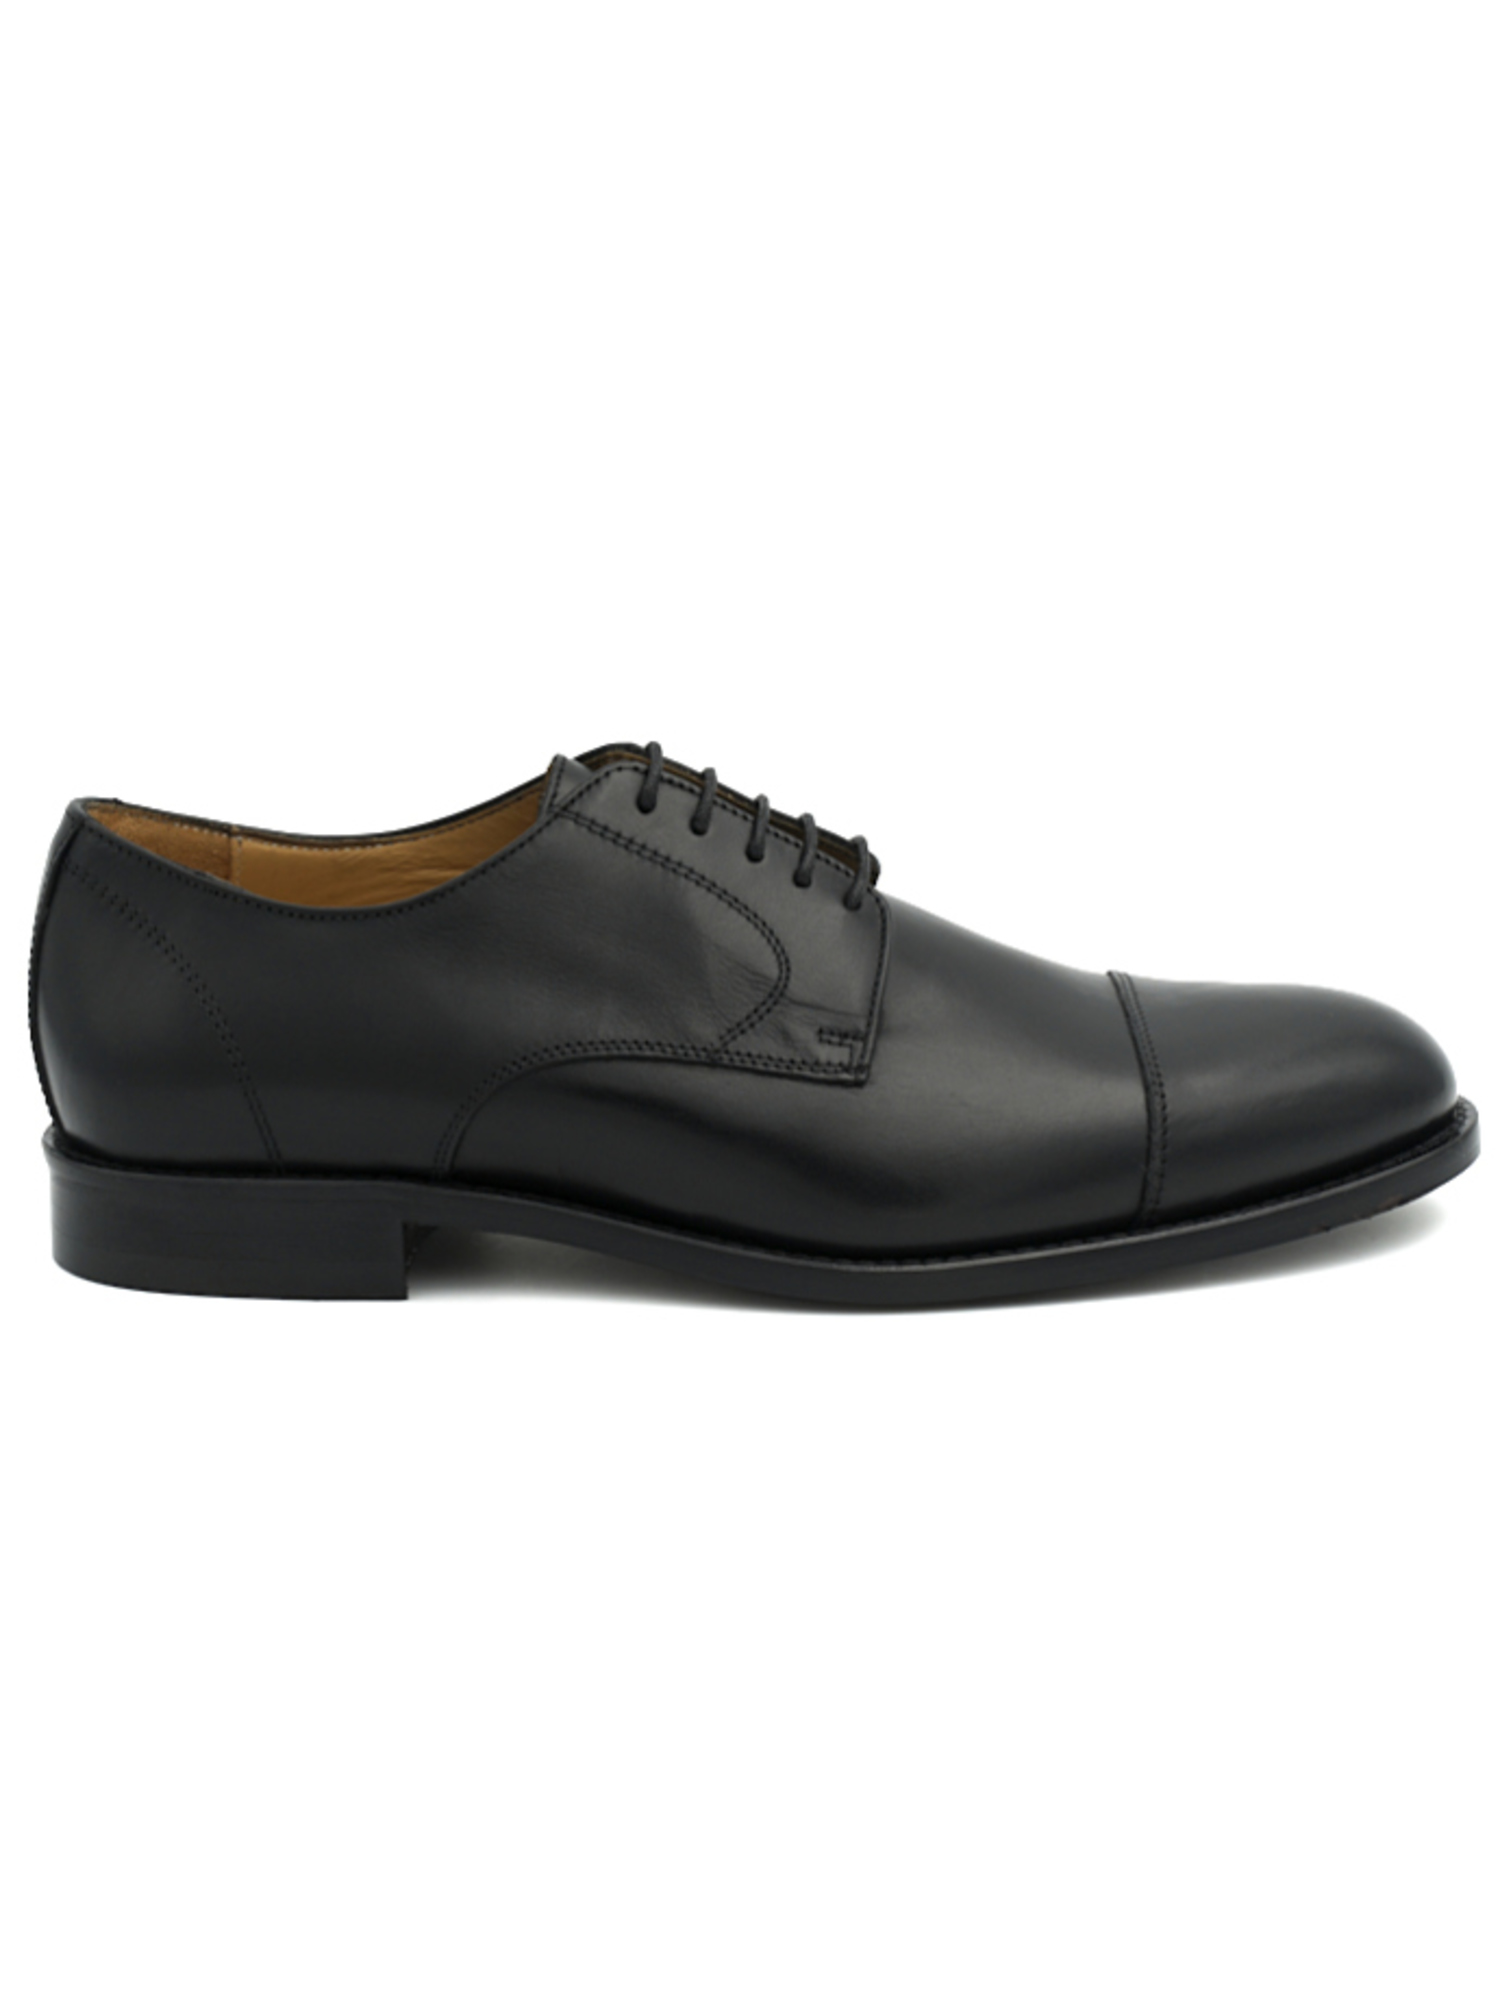 scarpa-elegante-mercante-fiorentini-da-uomo-nera